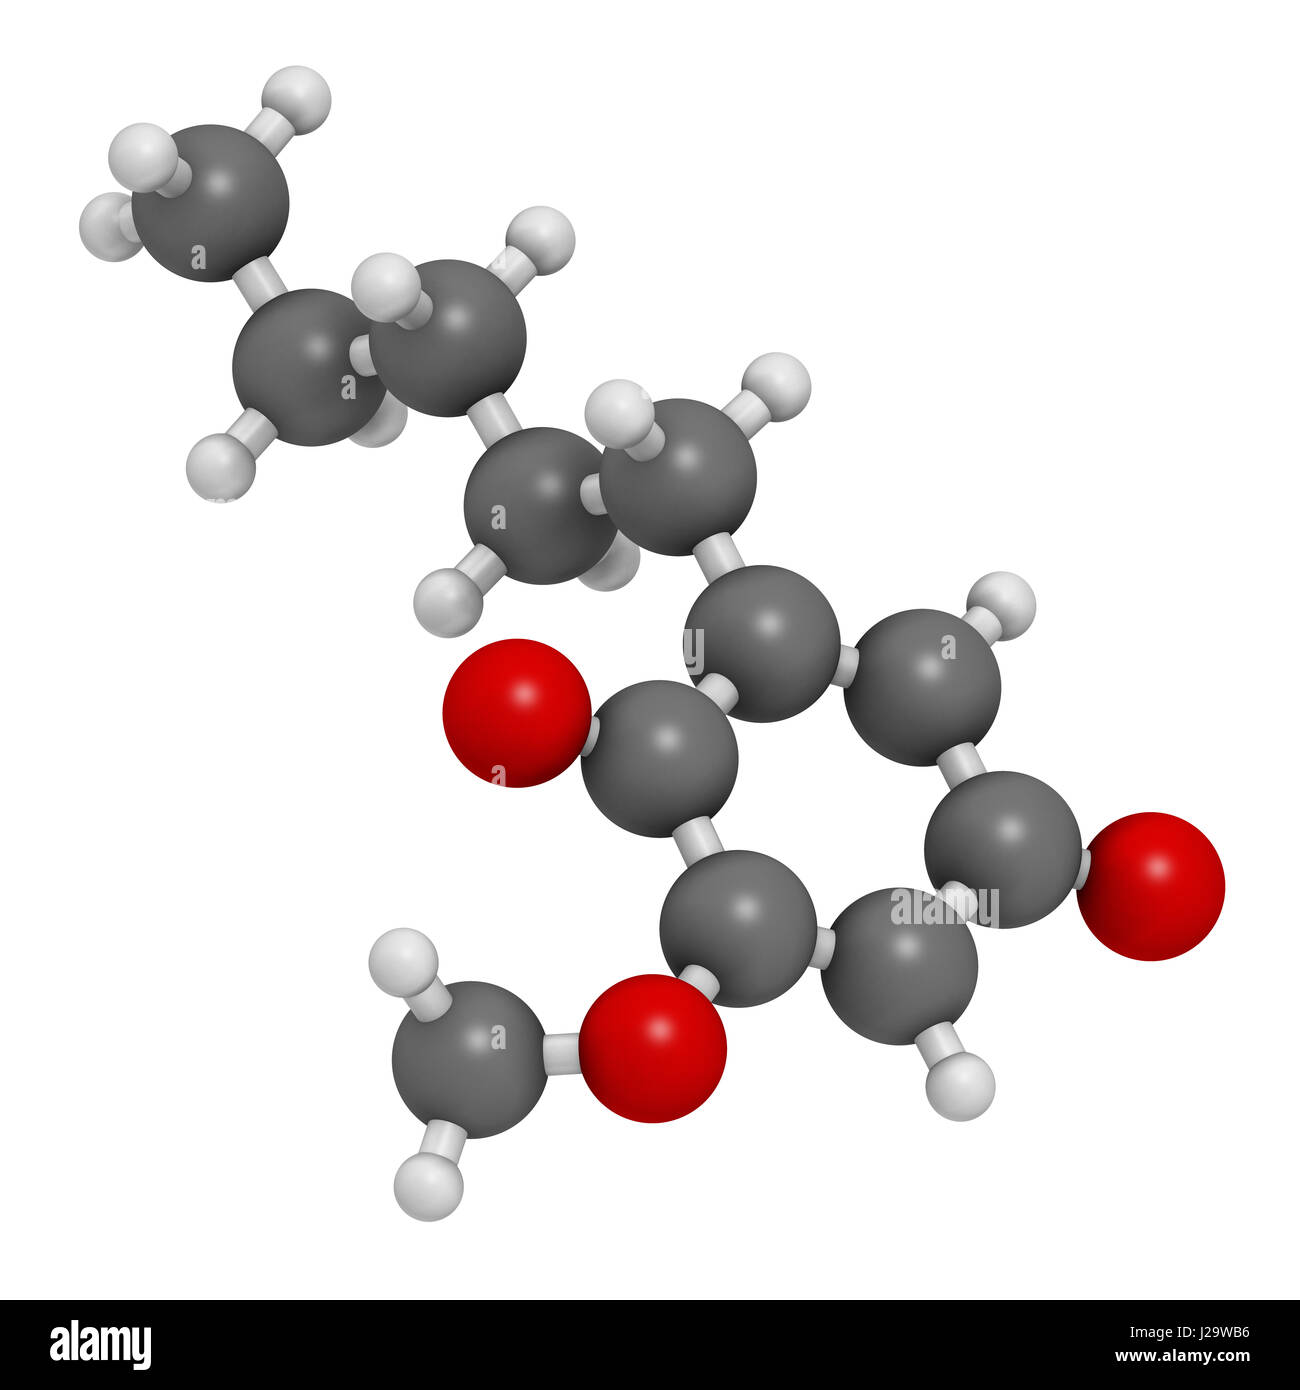 Primin Primel Pflanze Allergen Molekül. 3D-Rendering. Atome sind als Kugeln mit konventionellen Farbcodierung vertreten: Wasserstoff (weiß), Kohlenstoff (grau Stockfoto